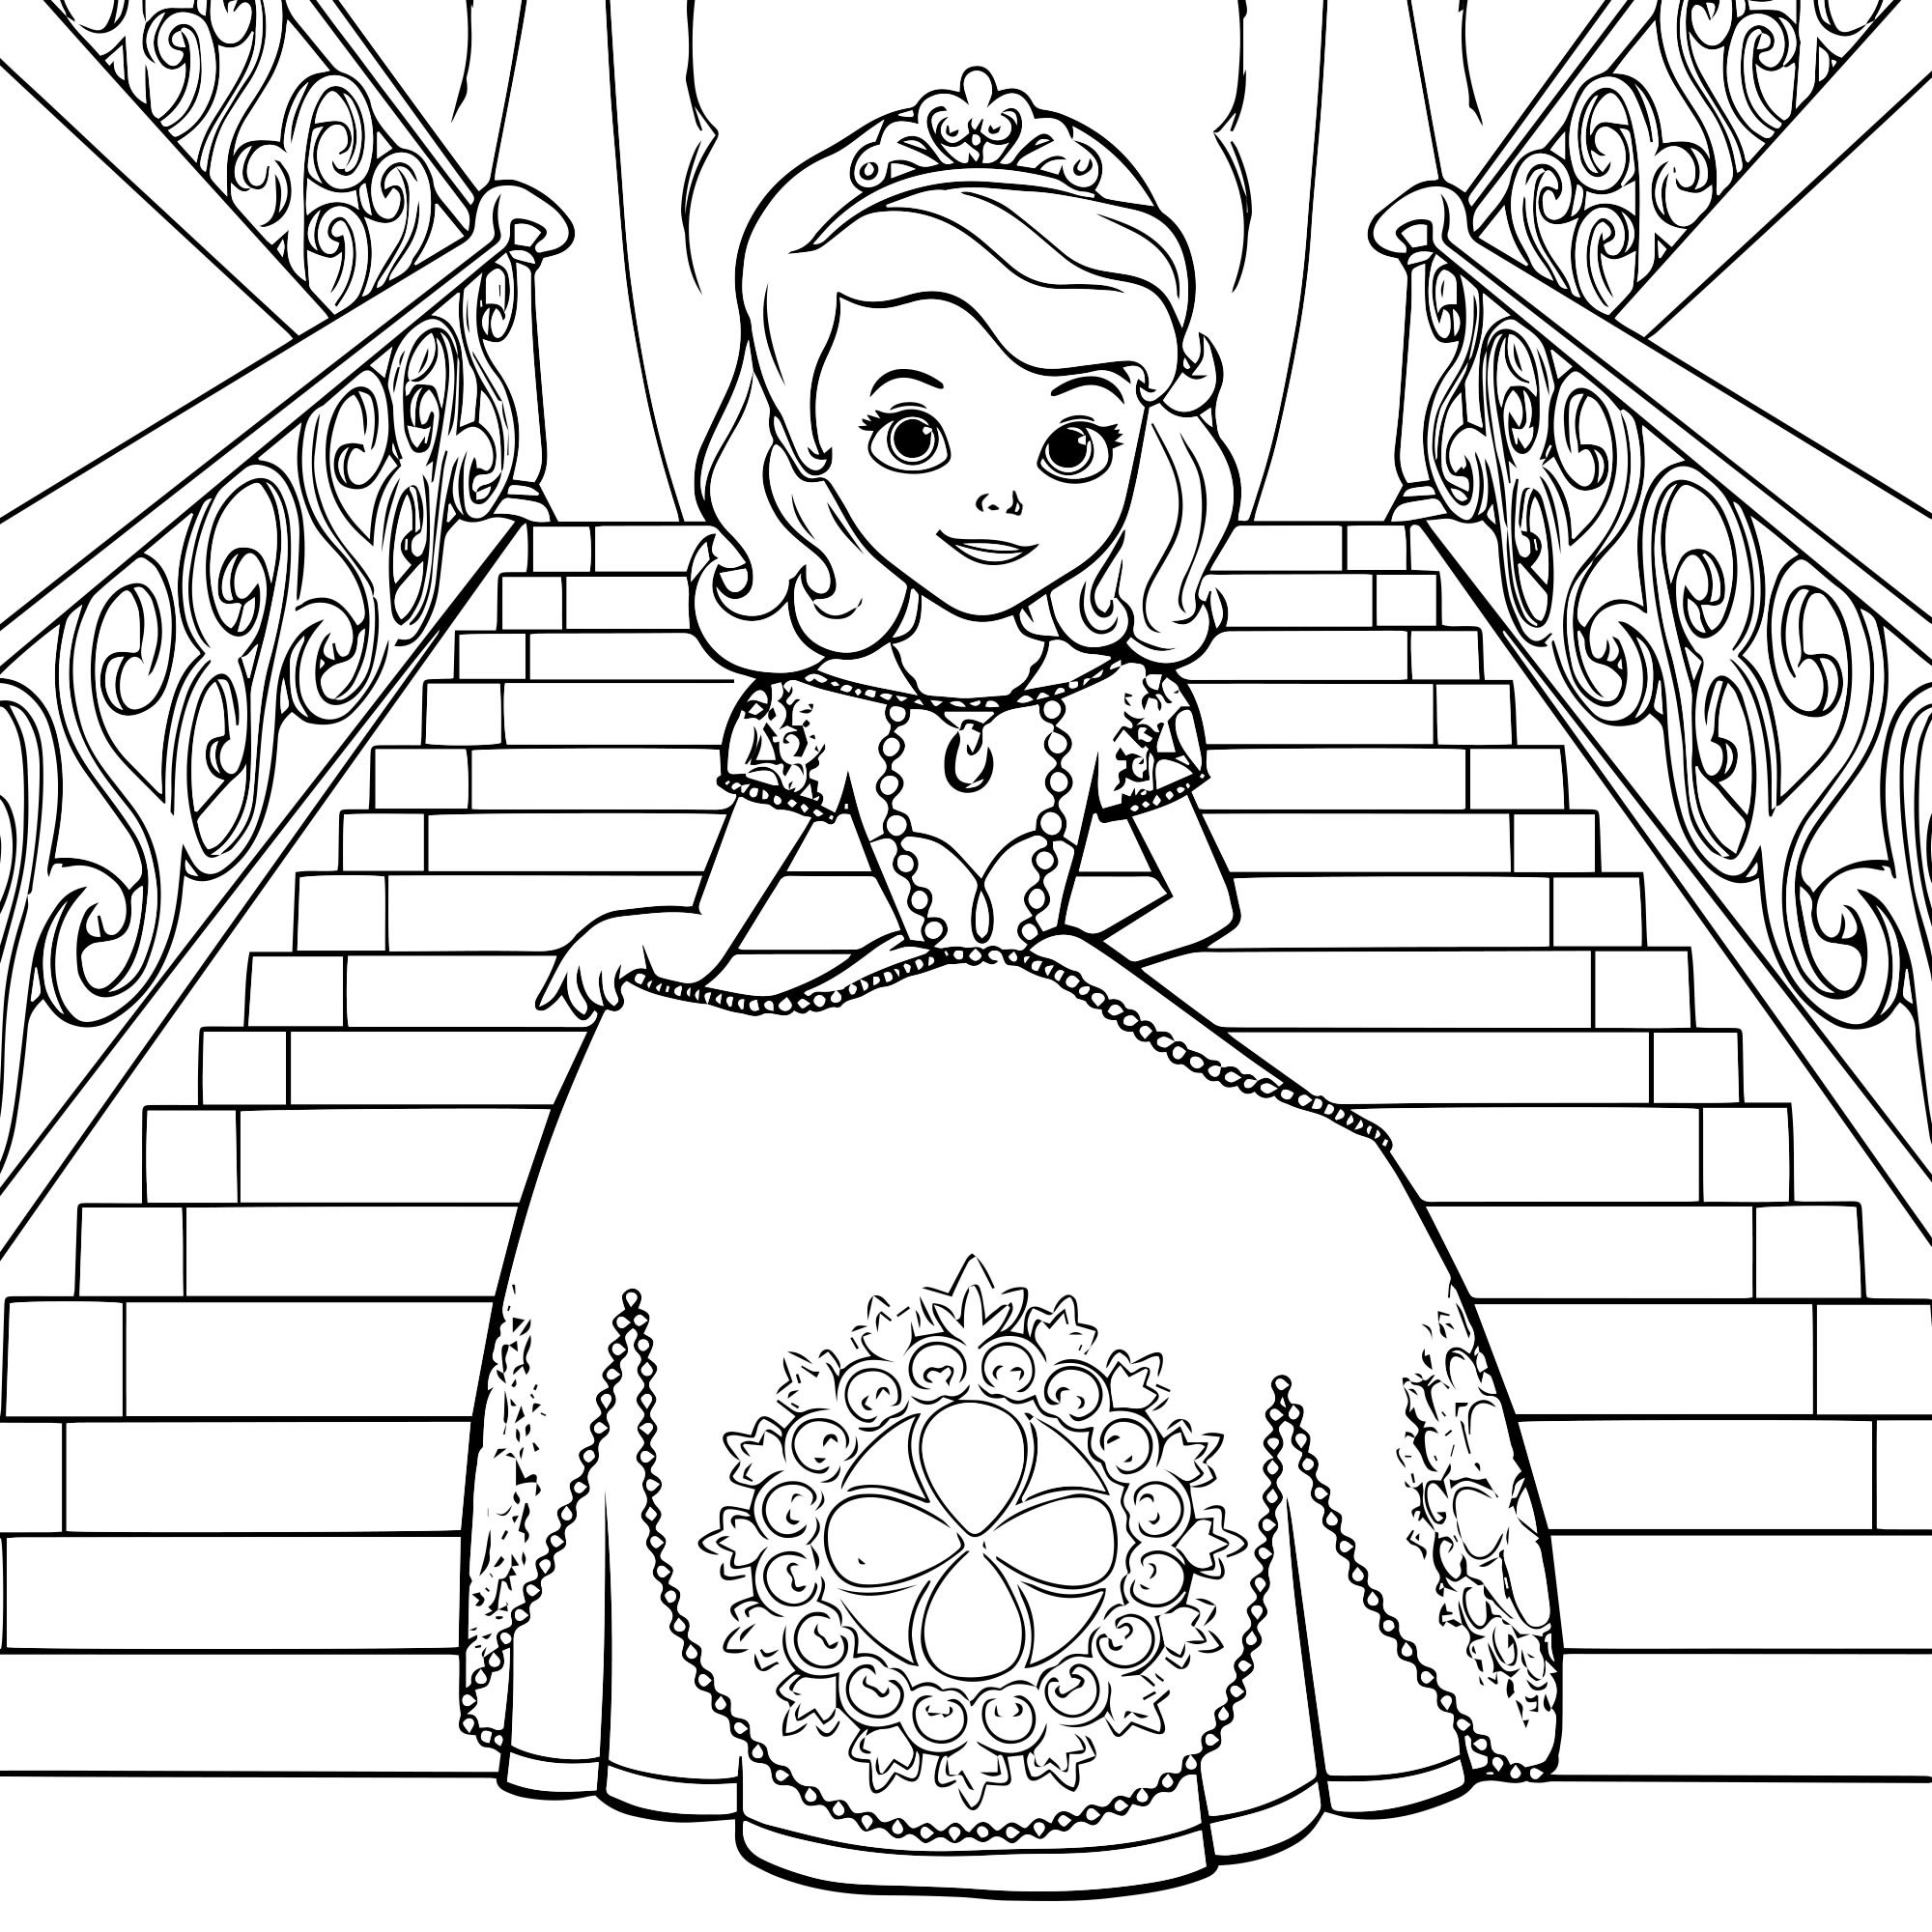 Раскраска принцесса софия по цифрам 😻 распечатать бесплатно